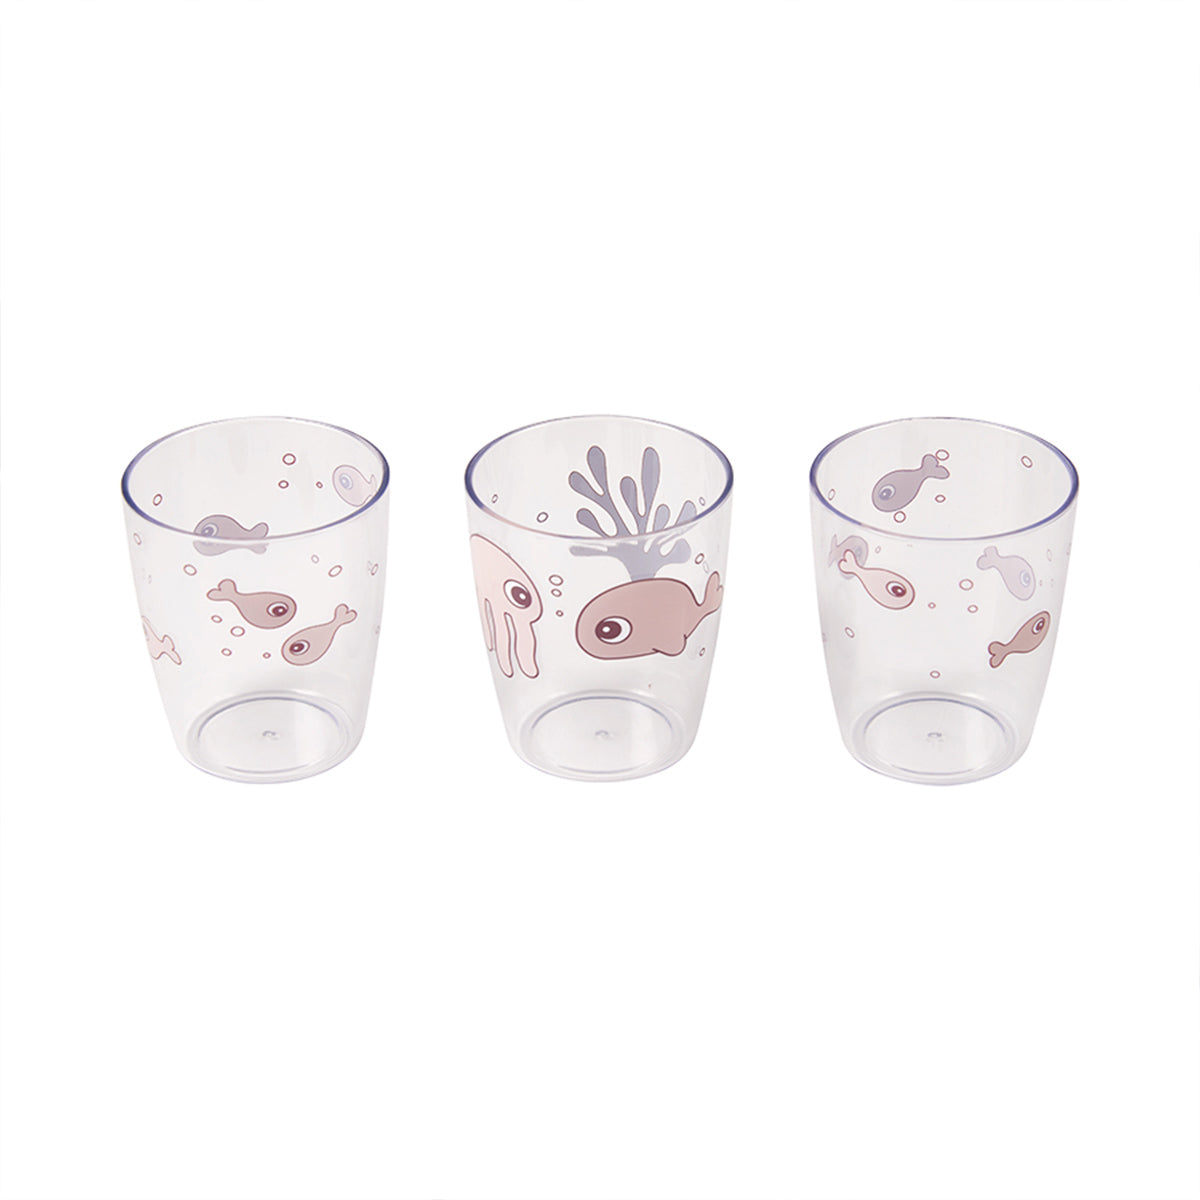 Zelf drinken doet je kleintje uit de Done by Deer yummy 3 pack mini glas sea friends powder! Deze roze kinderglazen met zeedieren zijn speciaal ontworpen voor kleine handjes. VanZus